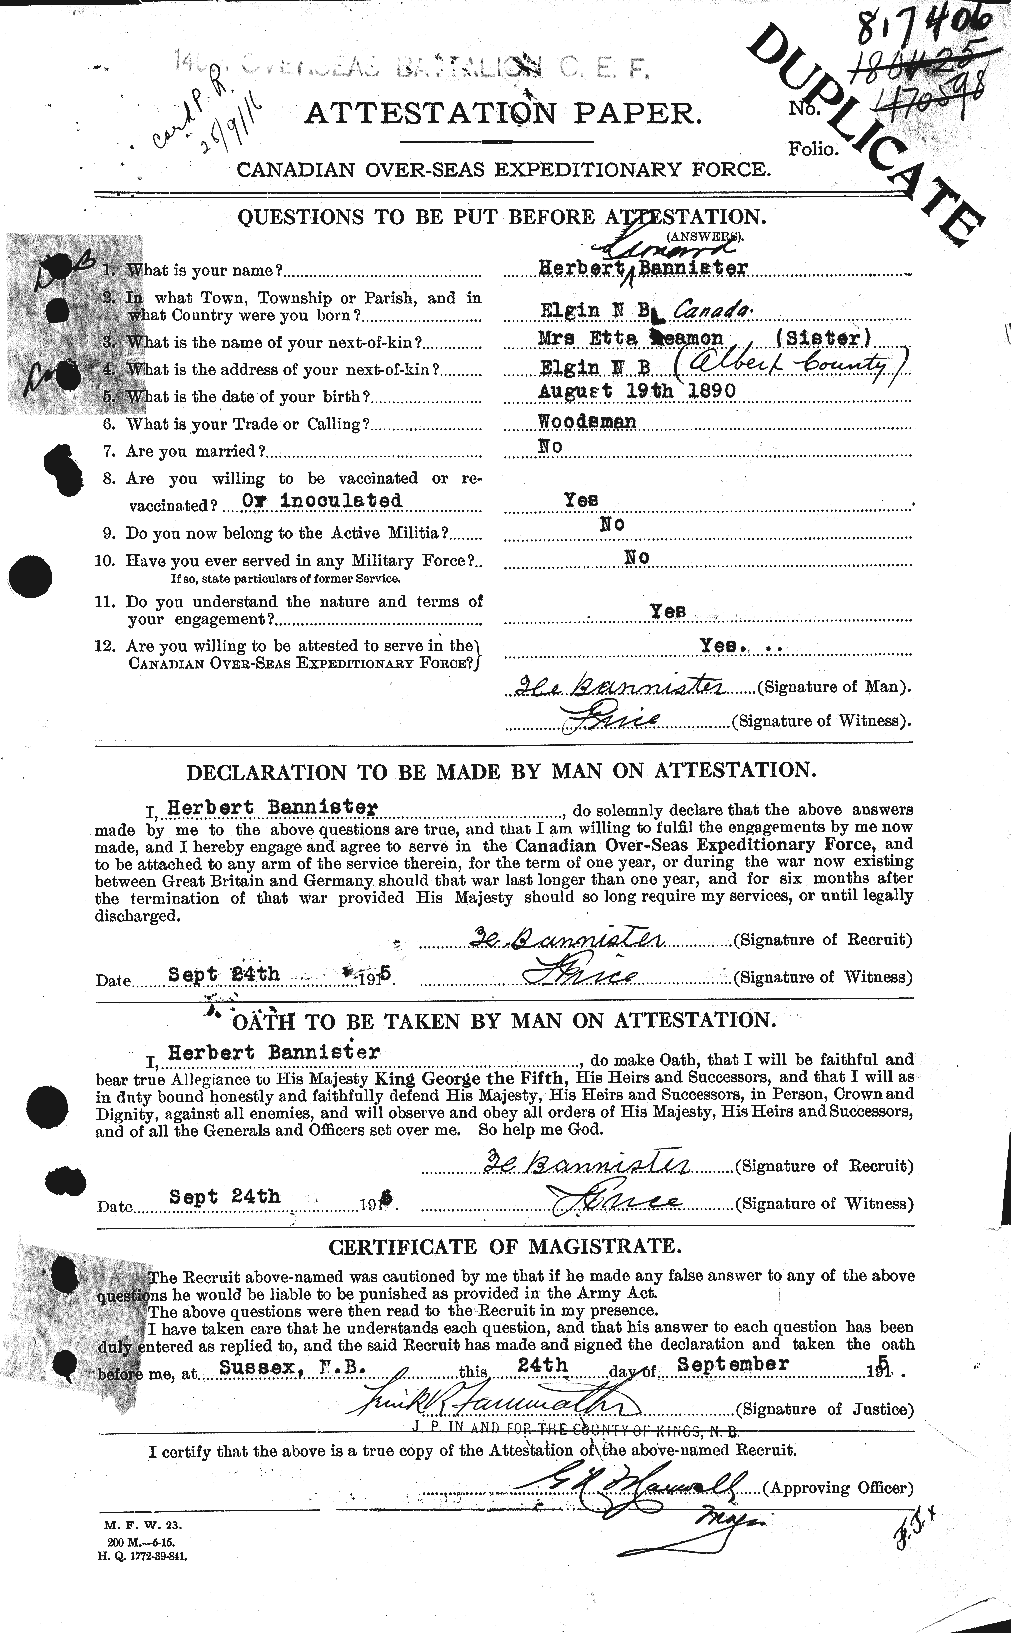 Dossiers du Personnel de la Première Guerre mondiale - CEC 224786a